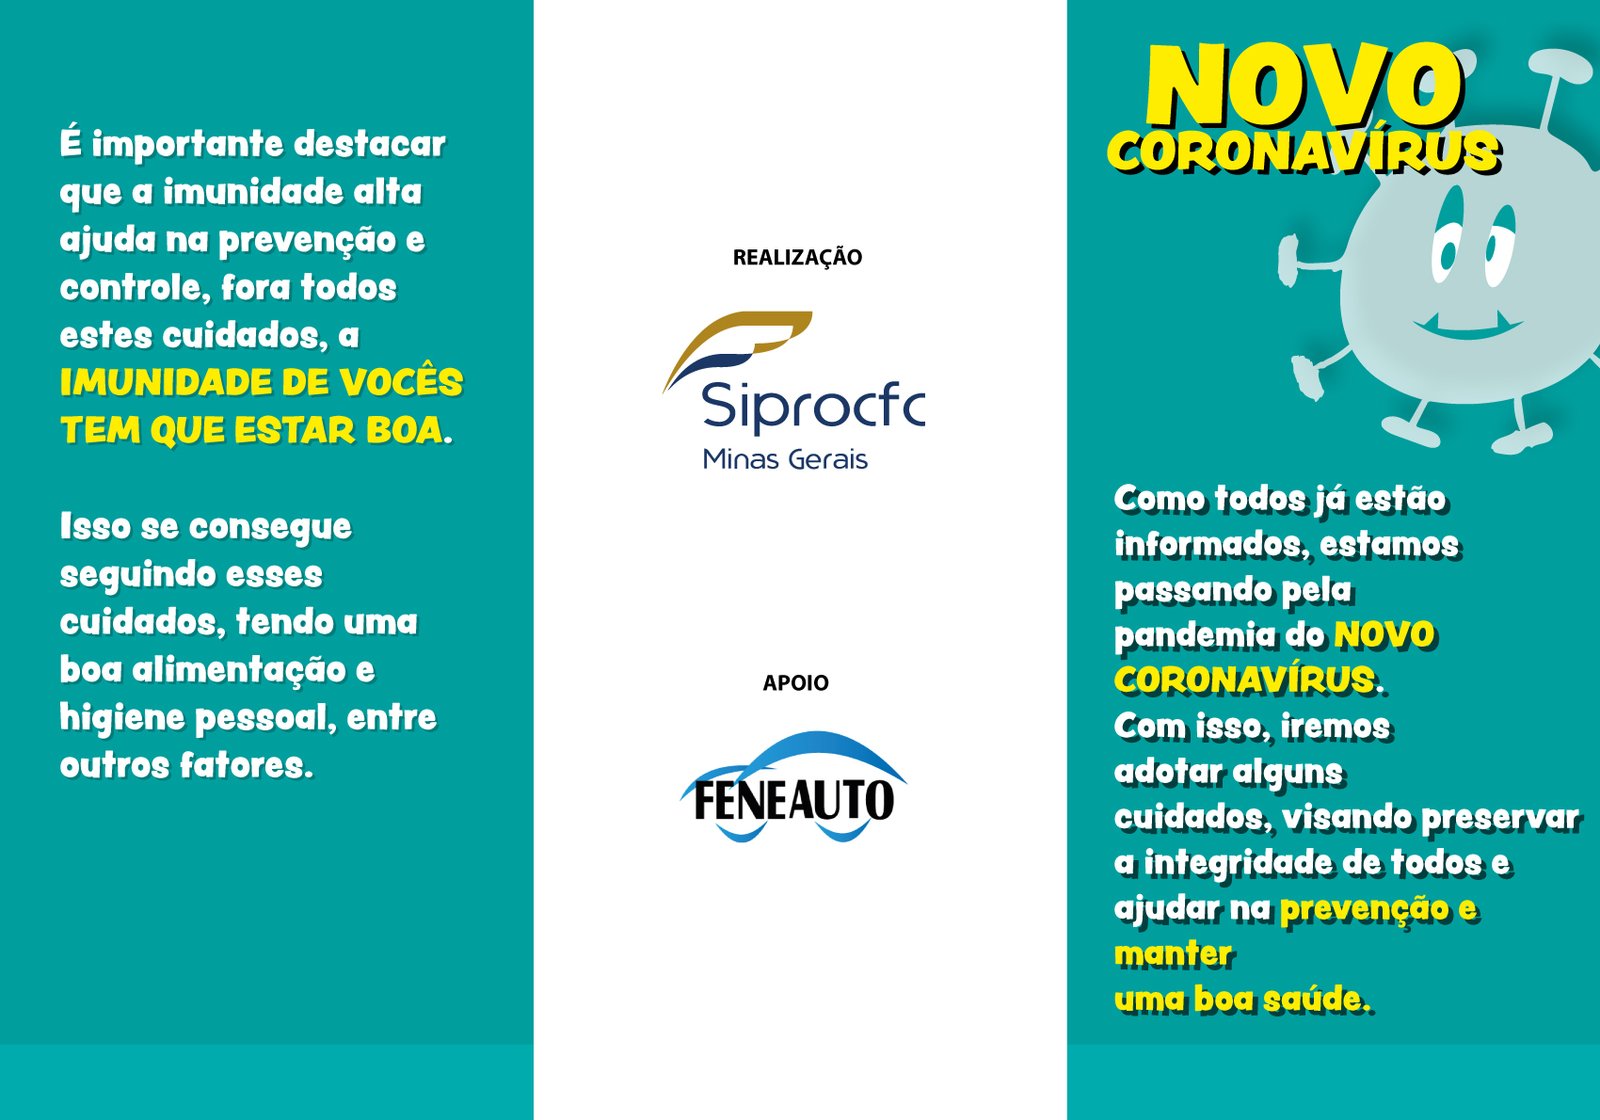 SiproCFC-MG elaborou cartilha contendo dicas de prevenção contra o coronavírus, faça o download